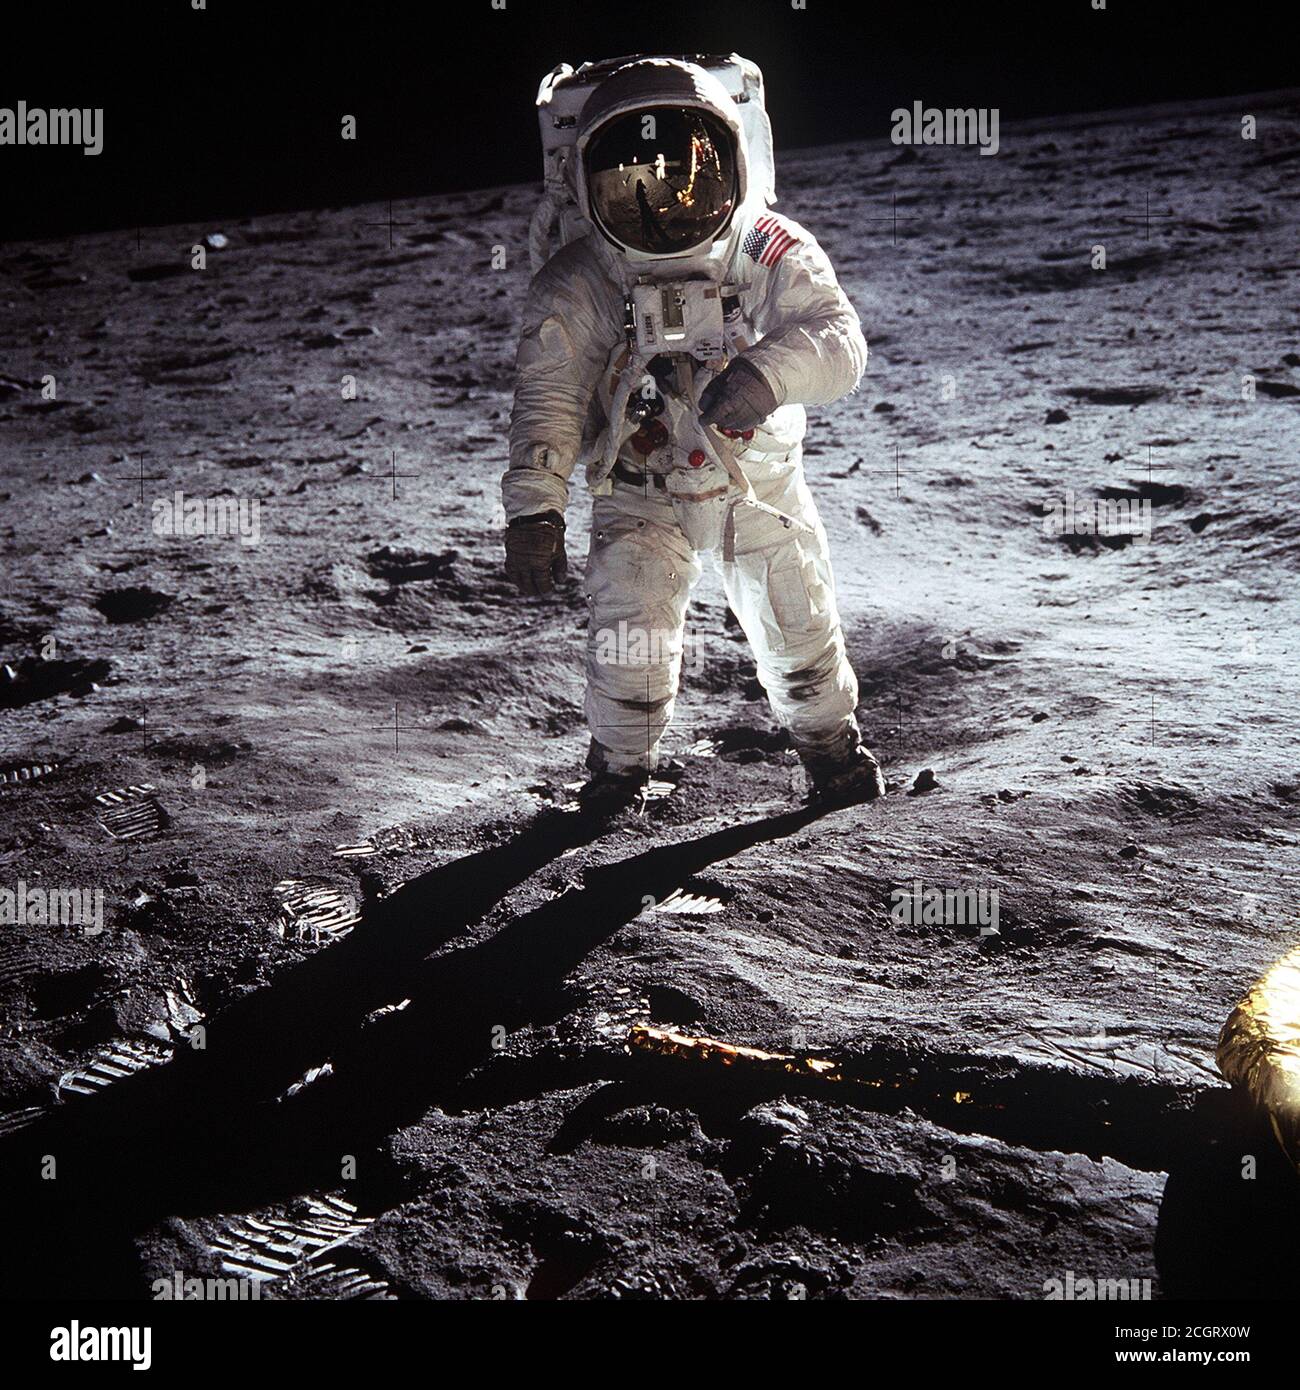 L'astronauta Buzz Aldrin, pilota di modulo lunare, cammina sulla superficie della Luna vicino alla gamba del modulo lunare (LM) 'Eagle' durante l'attività extraveicolare Apollo 11 (EVA). L'astronauta Neil A. Armstrong, comandante, ha scattato questa fotografia con una fotocamera con superficie lunare da 70 mm. Mentre gli astronauti Armstrong e Aldrin scesero nel modulo Lunar (LM) 'Eagle' per esplorare la regione del Mare della tranquillità della Luna, l'astronauta Michael Collins, pilota del modulo di comando, rimase con i moduli di comando e servizio (CSM) 'Columbia' in orbita lunare. Foto Stock